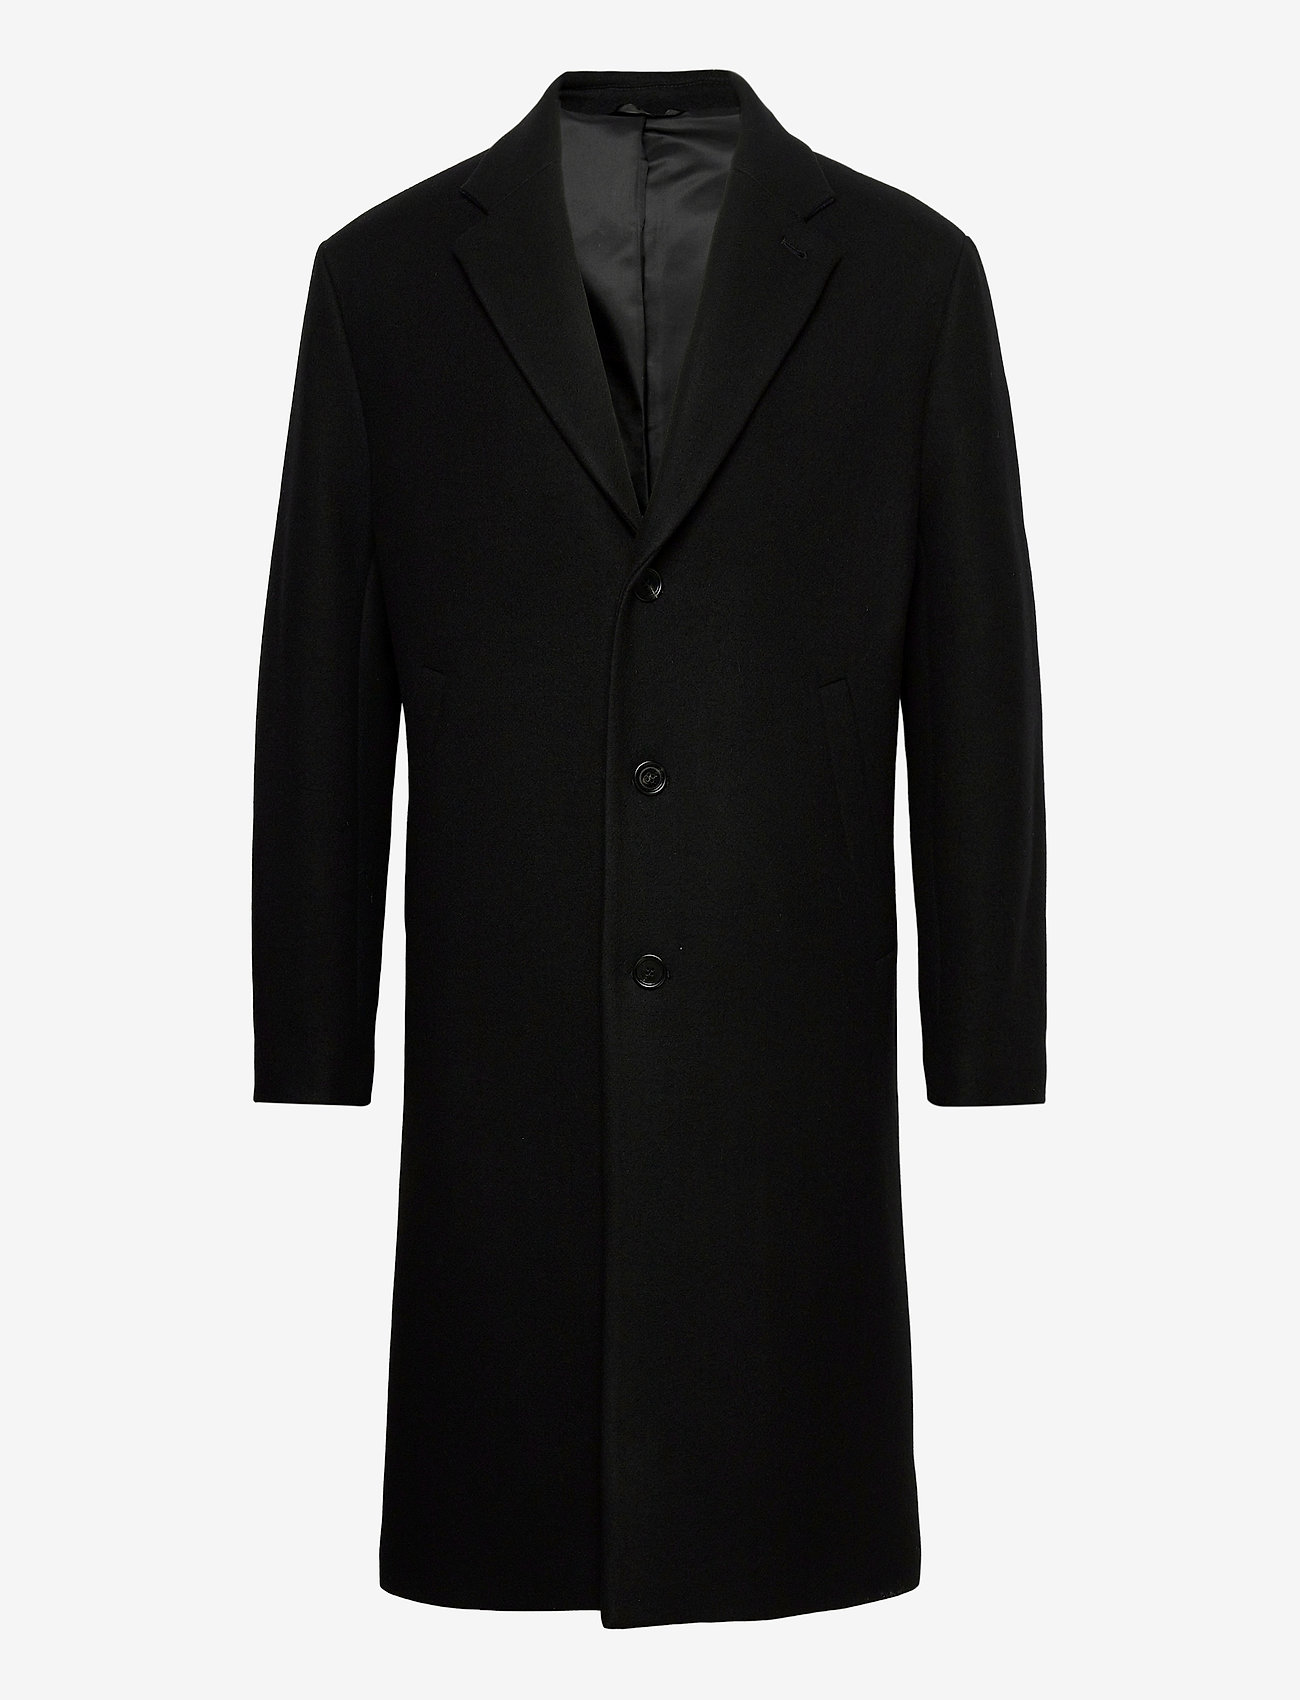 Filippa K M. London Coat - Jackets & Coats | Boozt.com